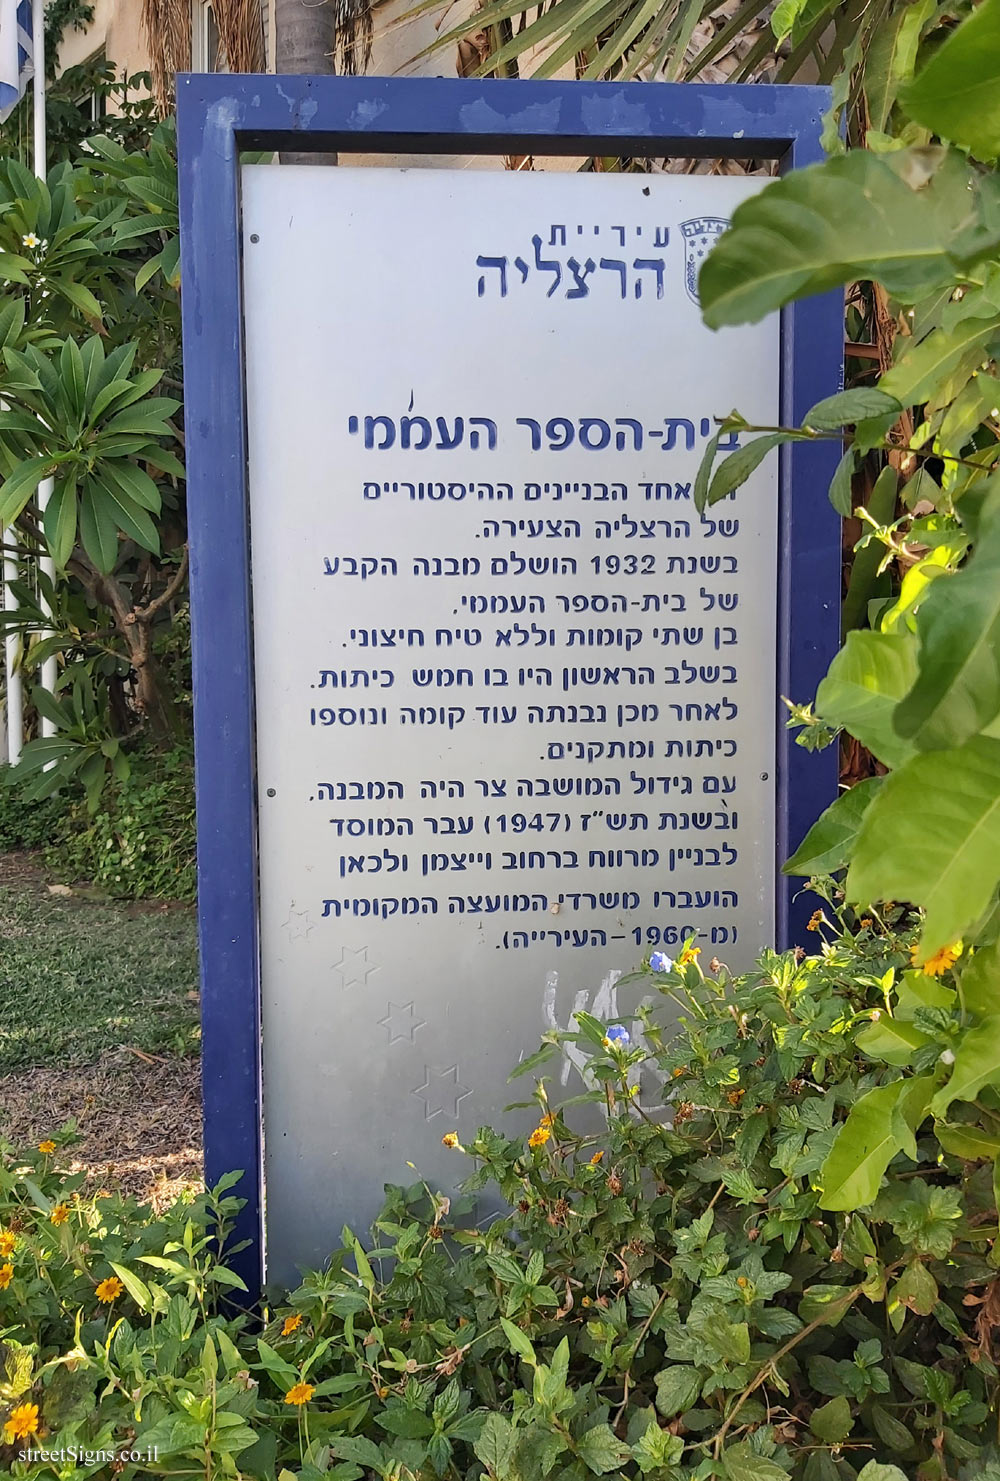 Herzliya -The elementary school